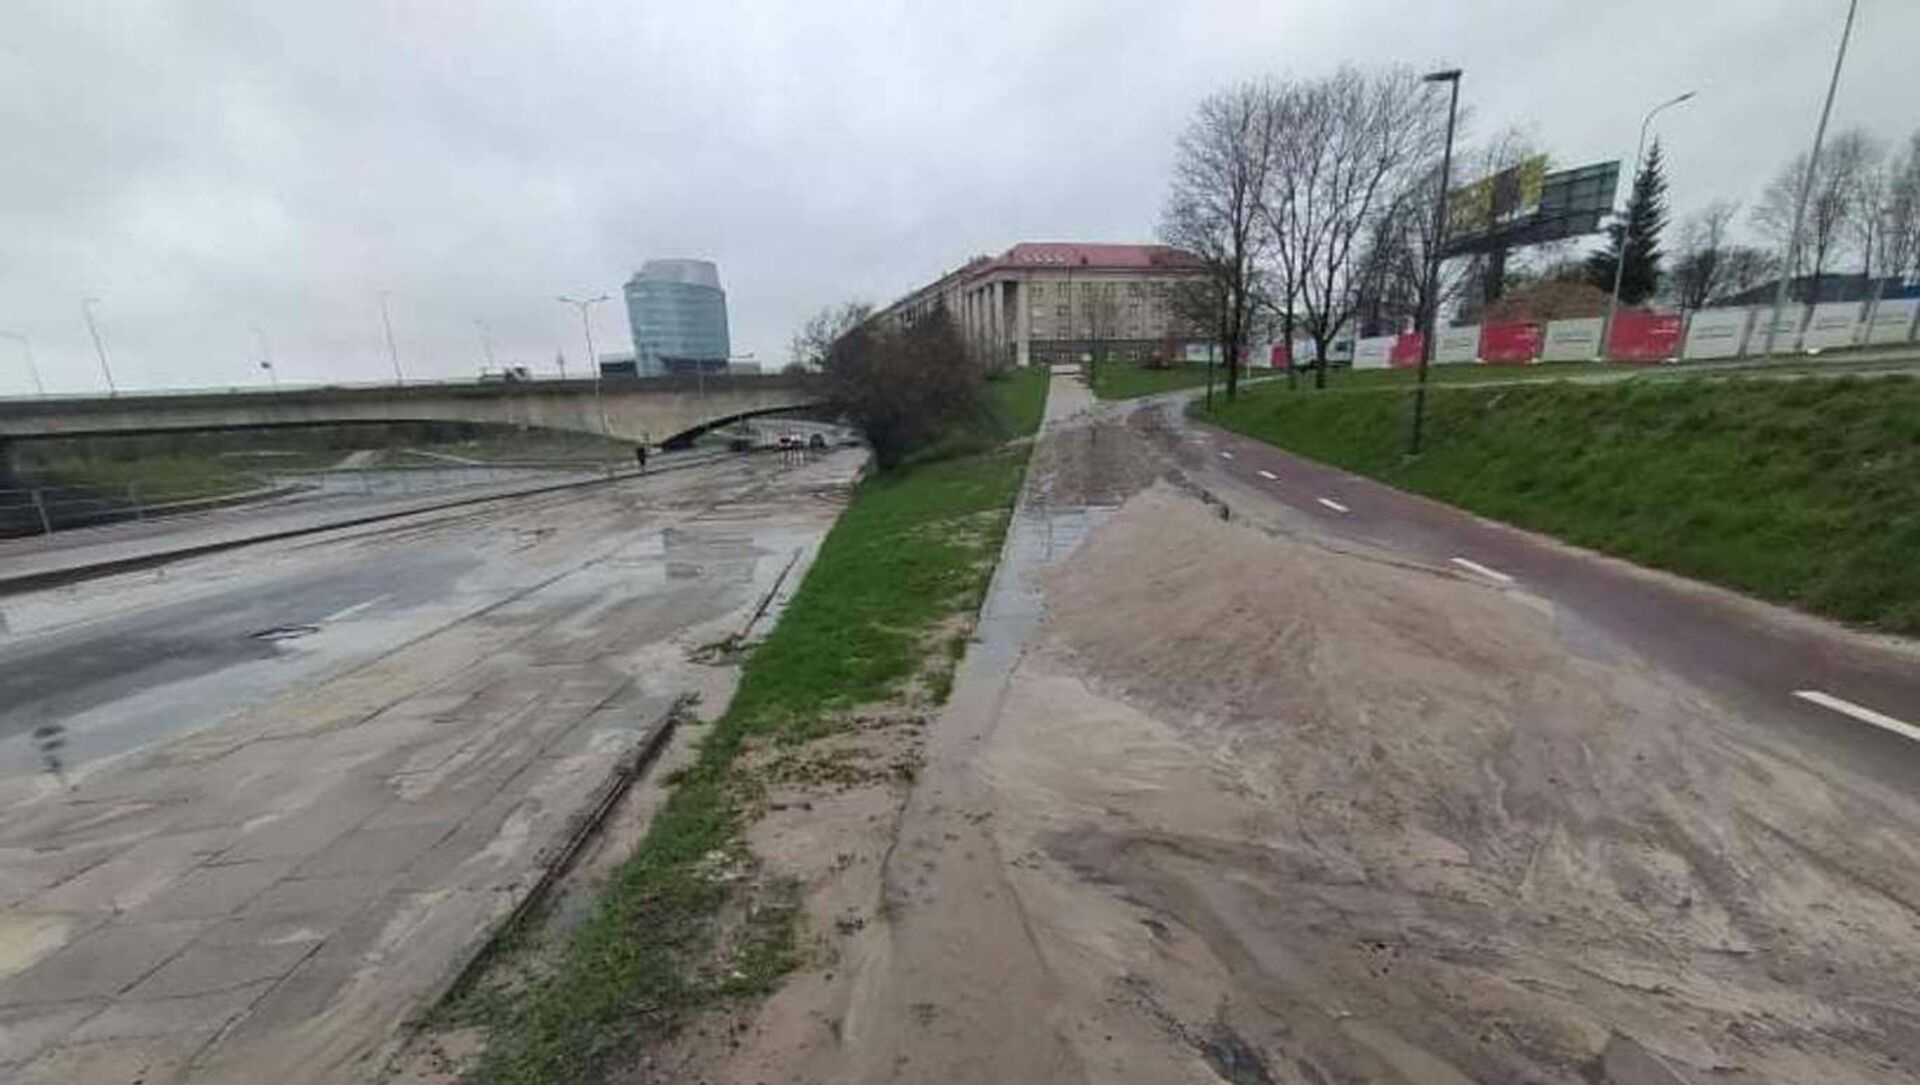 Улицу Упес в Вильнюсе залило водой из-за аварии с водопроводом, 23 апреля 2021 года - Sputnik Lietuva, 1920, 23.04.2021